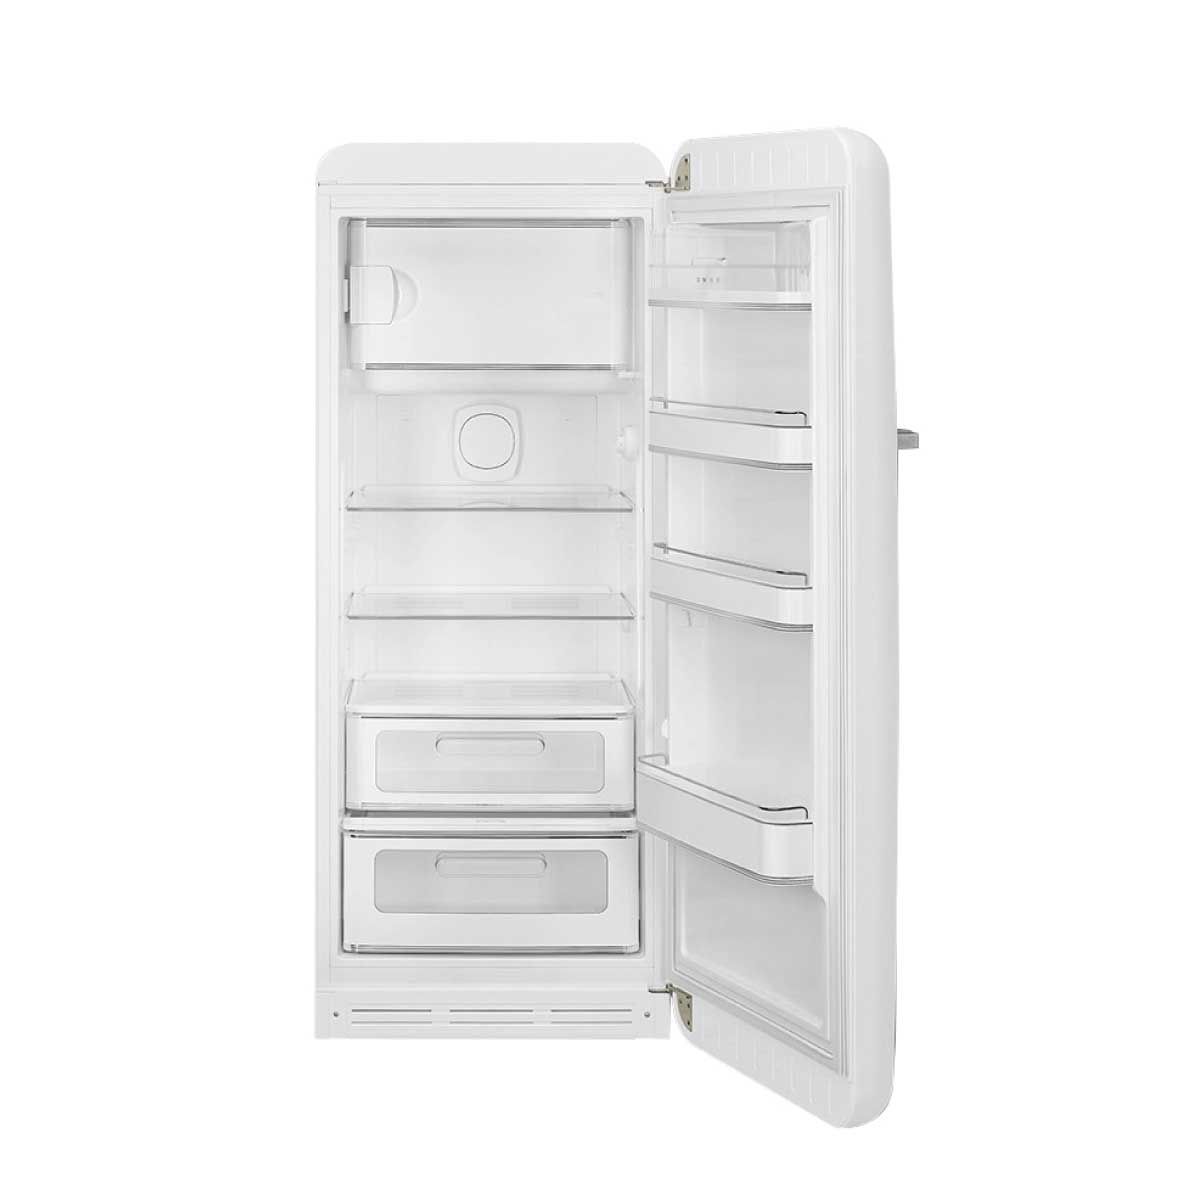 SMEG ตู้เย็น 1 ประตู 9.93 Q. สไตล์ 50 Retro Aesthetic รุ่น FAB28RWH5 สีขาว